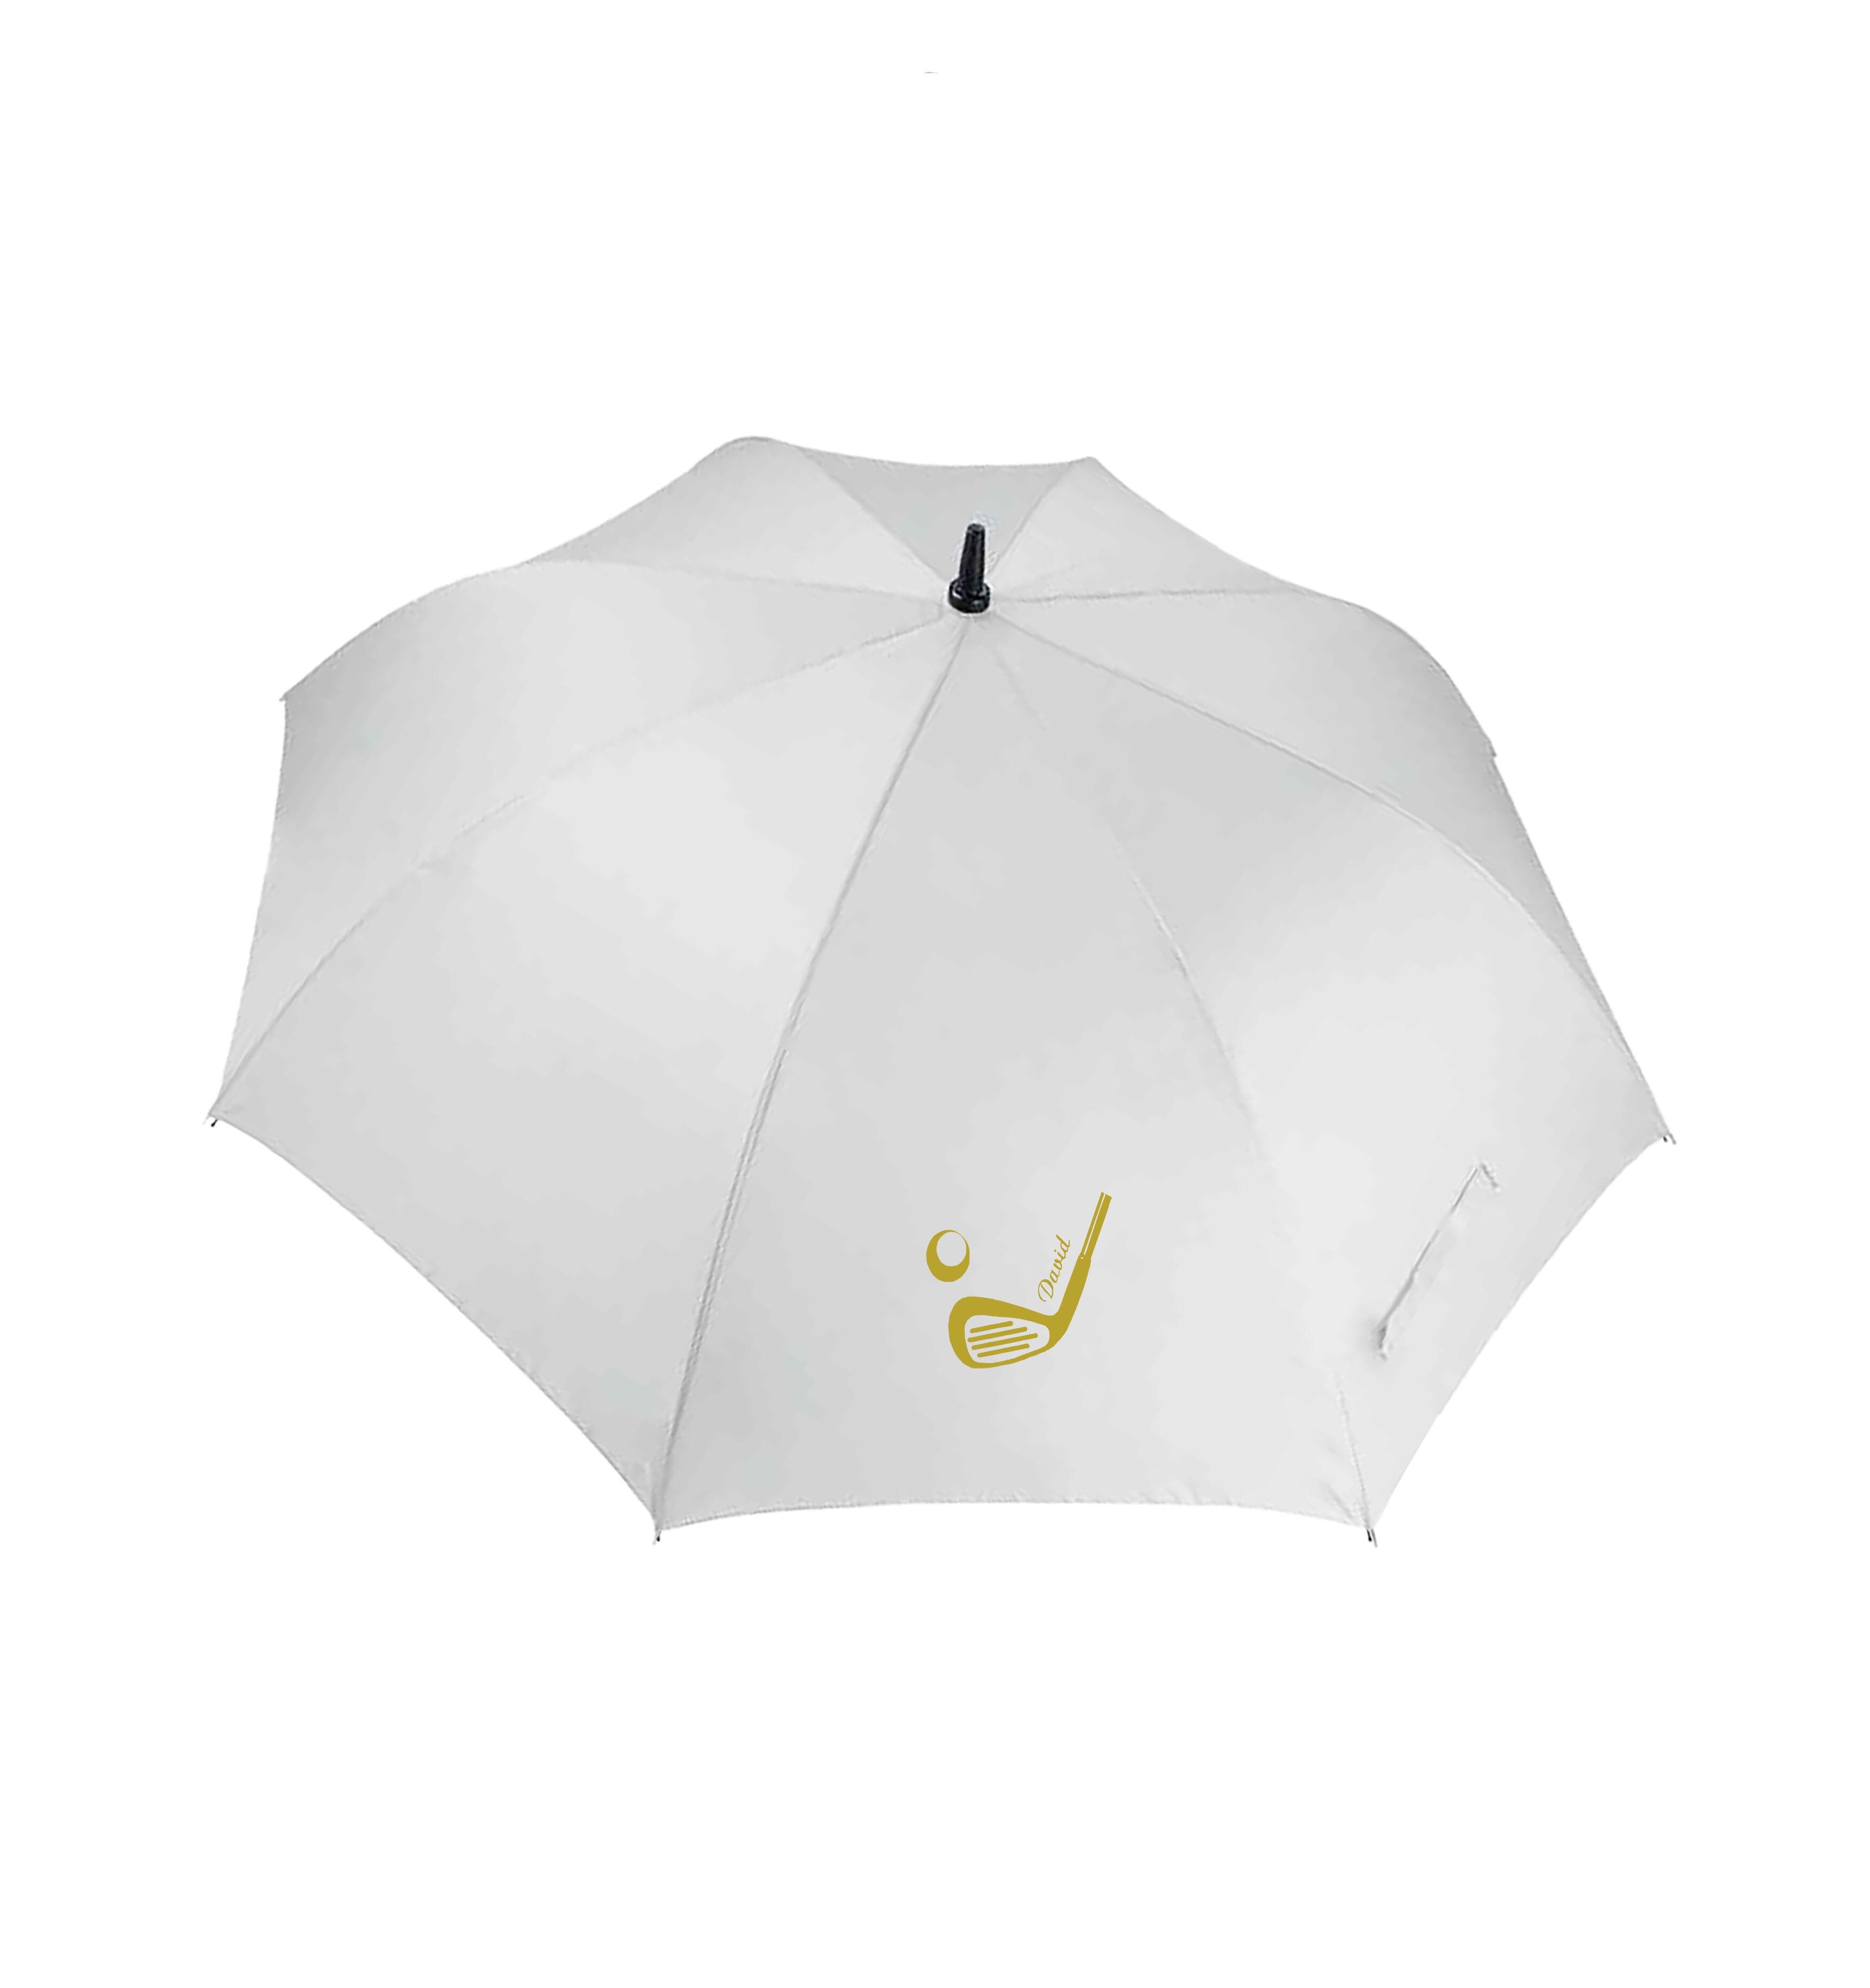 Golf Club Design Large Golf Umbrella White